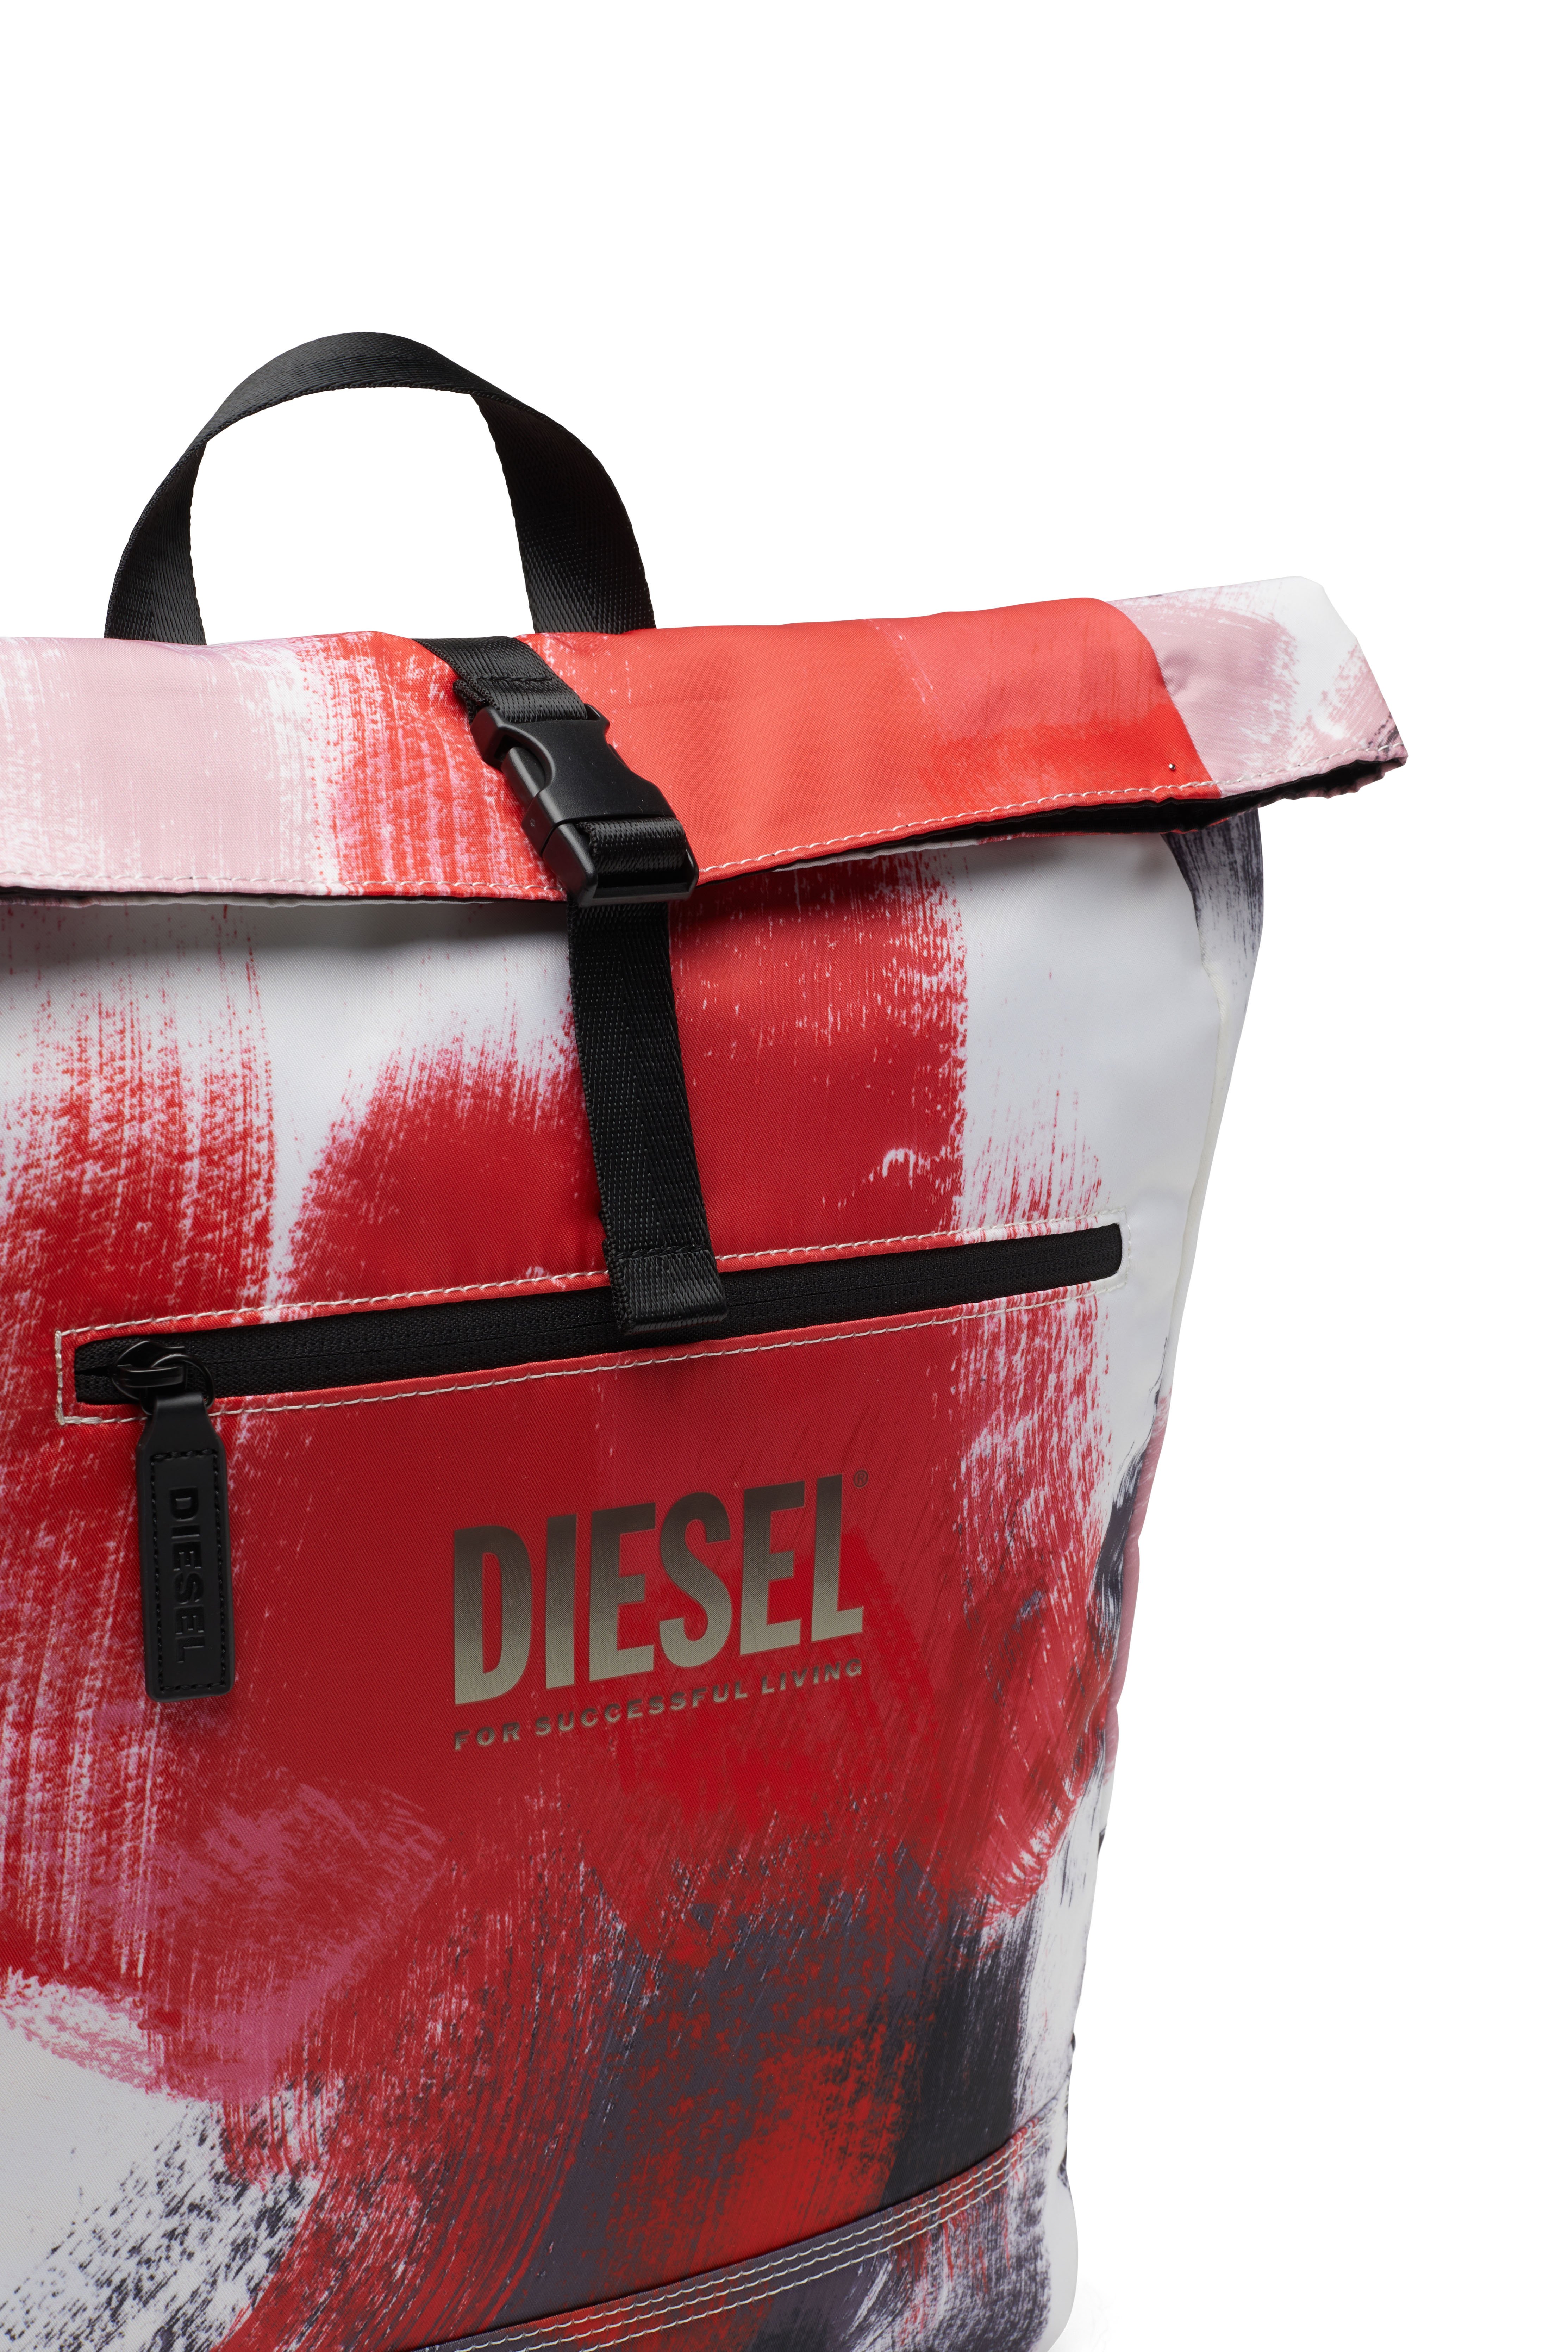 Diesel - NINJABACK PRINT, Rojo/Blanco - Image 5